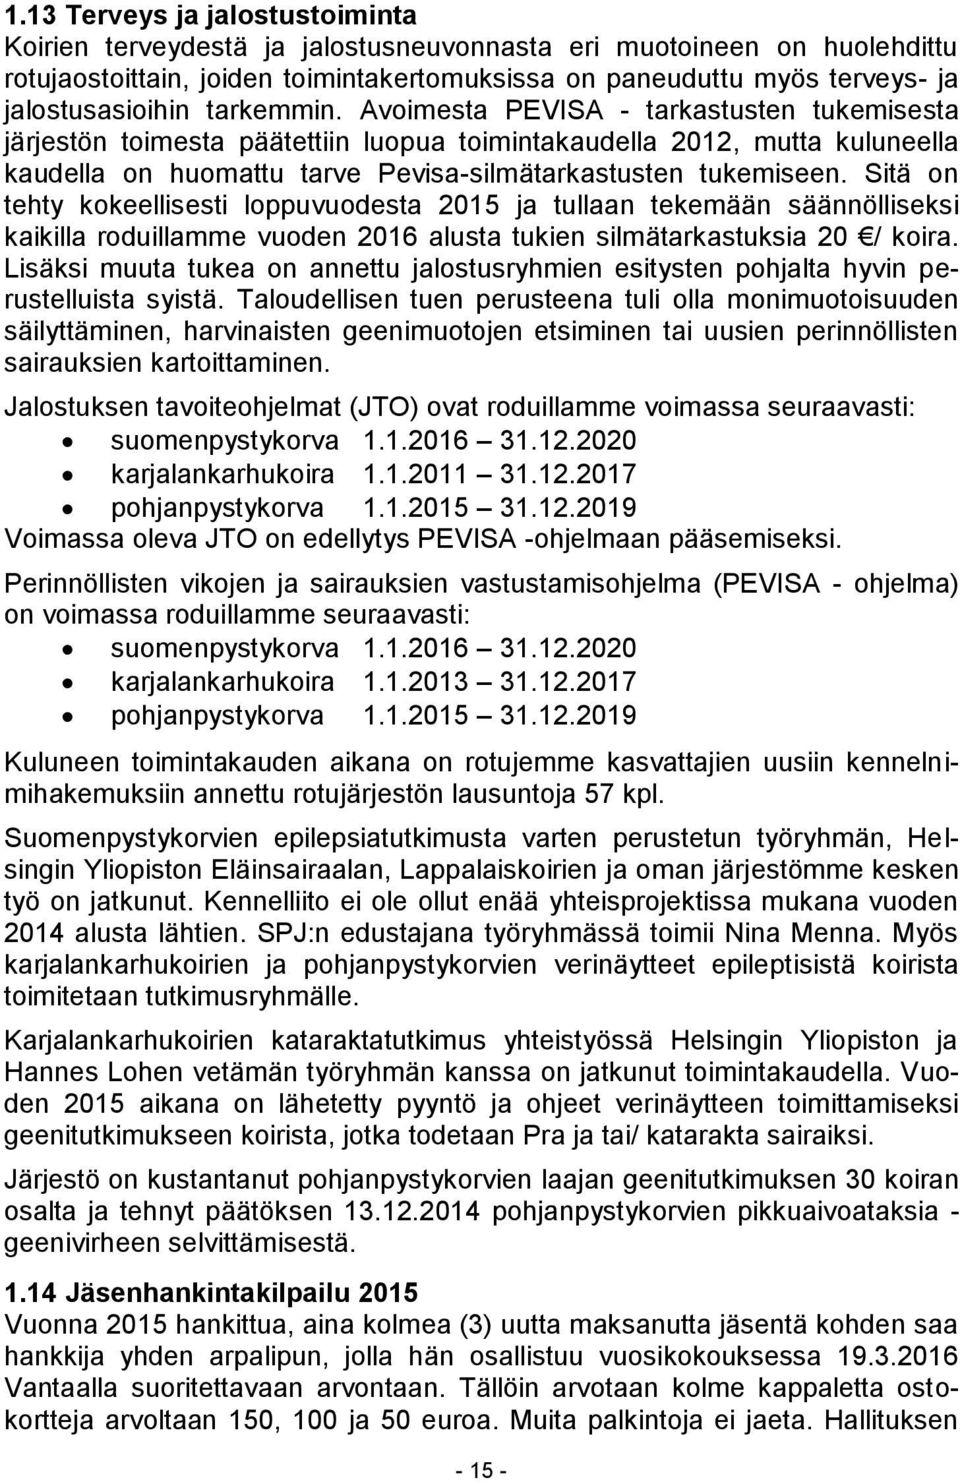 Avoimesta PEVISA - tarkastusten tukemisesta järjestön toimesta päätettiin luopua toimintakaudella 2012, mutta kuluneella kaudella on huomattu tarve Pevisa-silmätarkastusten tukemiseen.